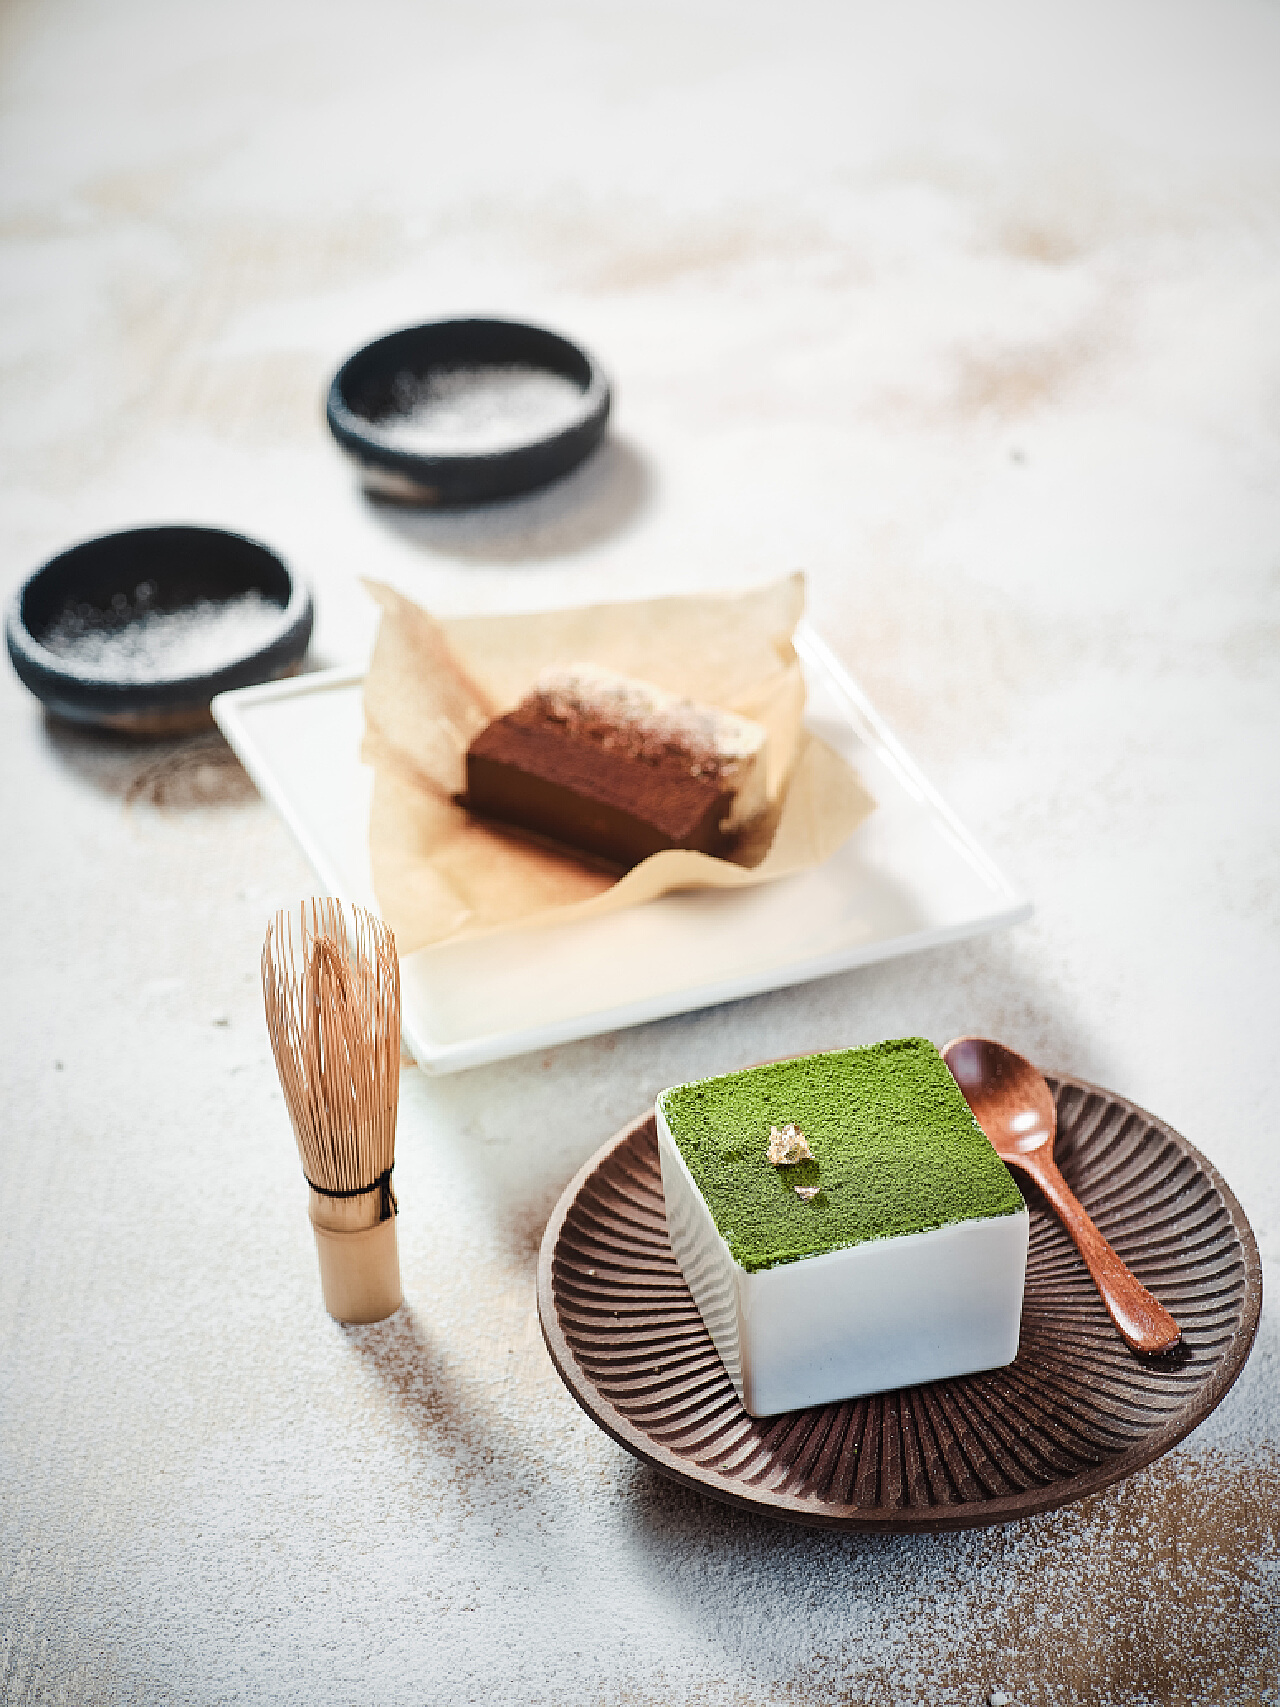 蛋糕第八课——日本甜点大师的招牌“小山卷” - 知乎